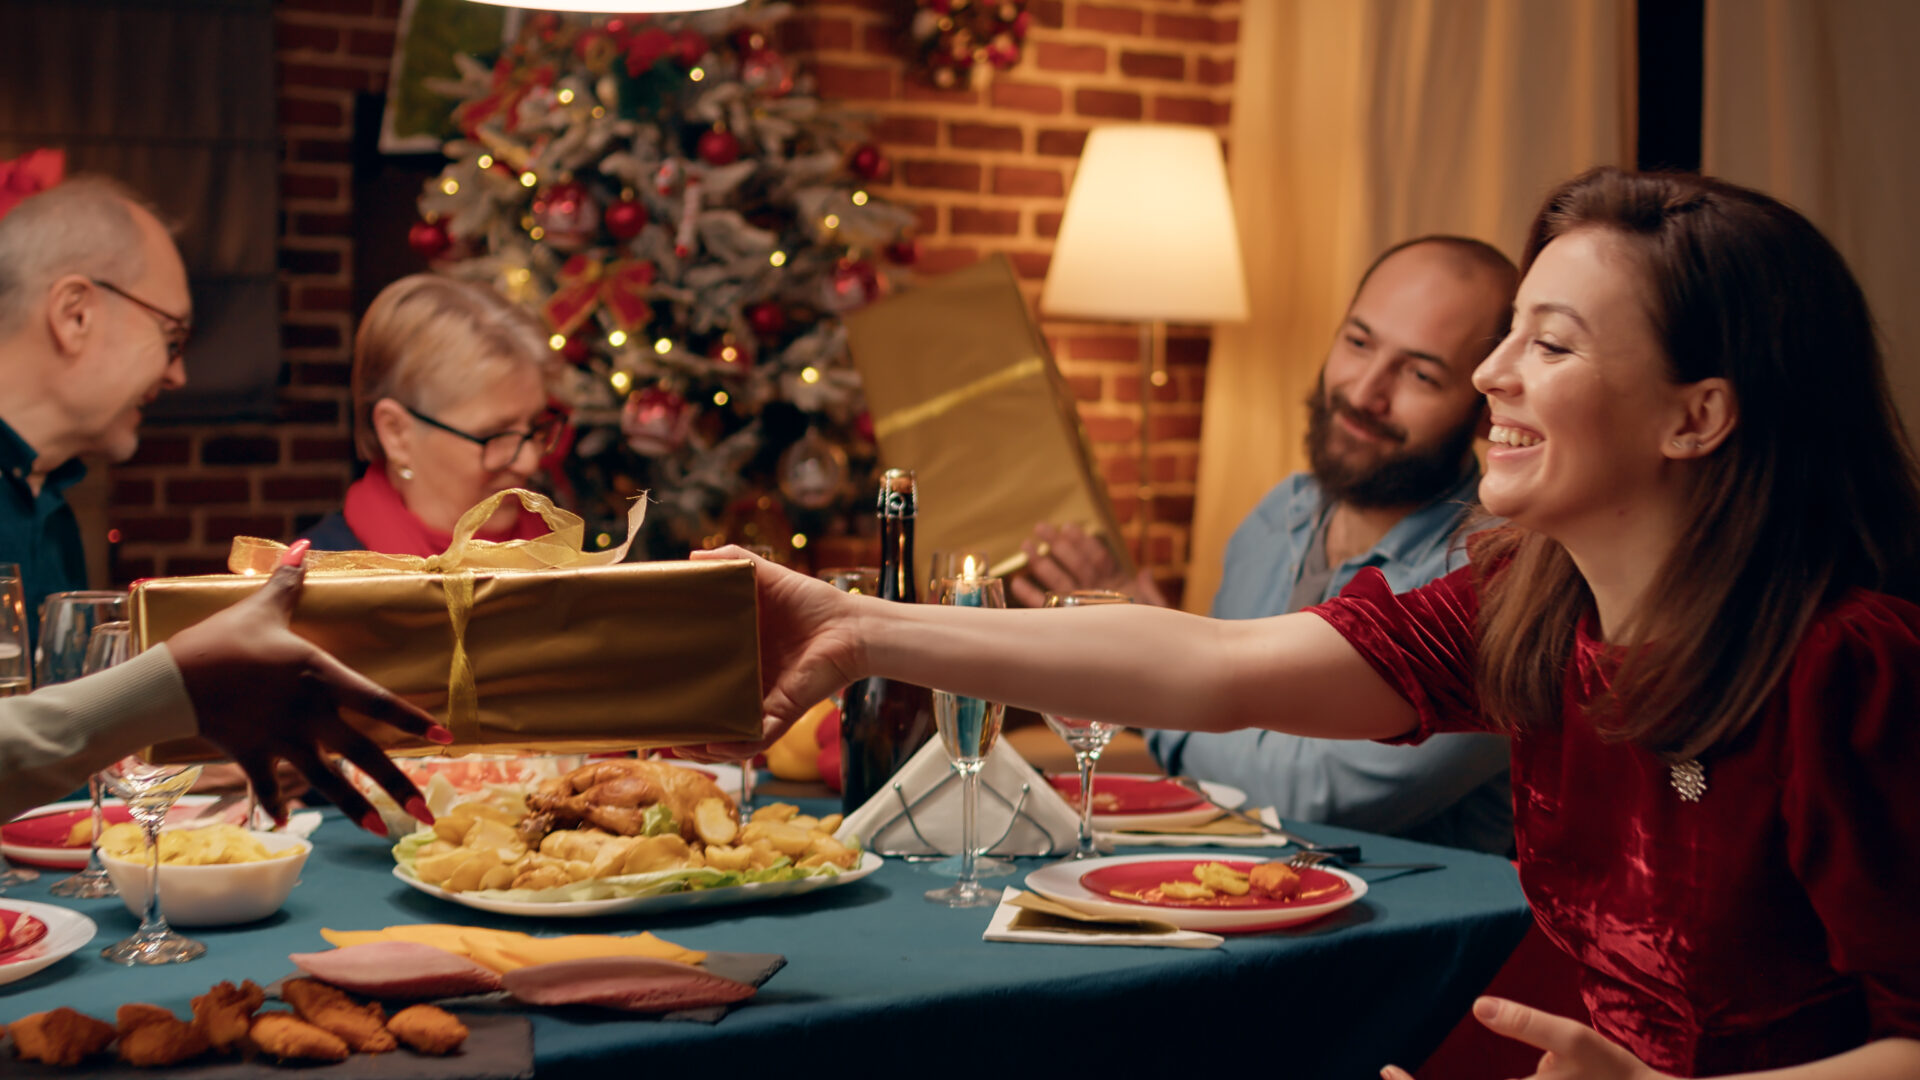 Vianočné zvyky a tradície majú svoju symboliku. Ktoré z nich dodržiavate?